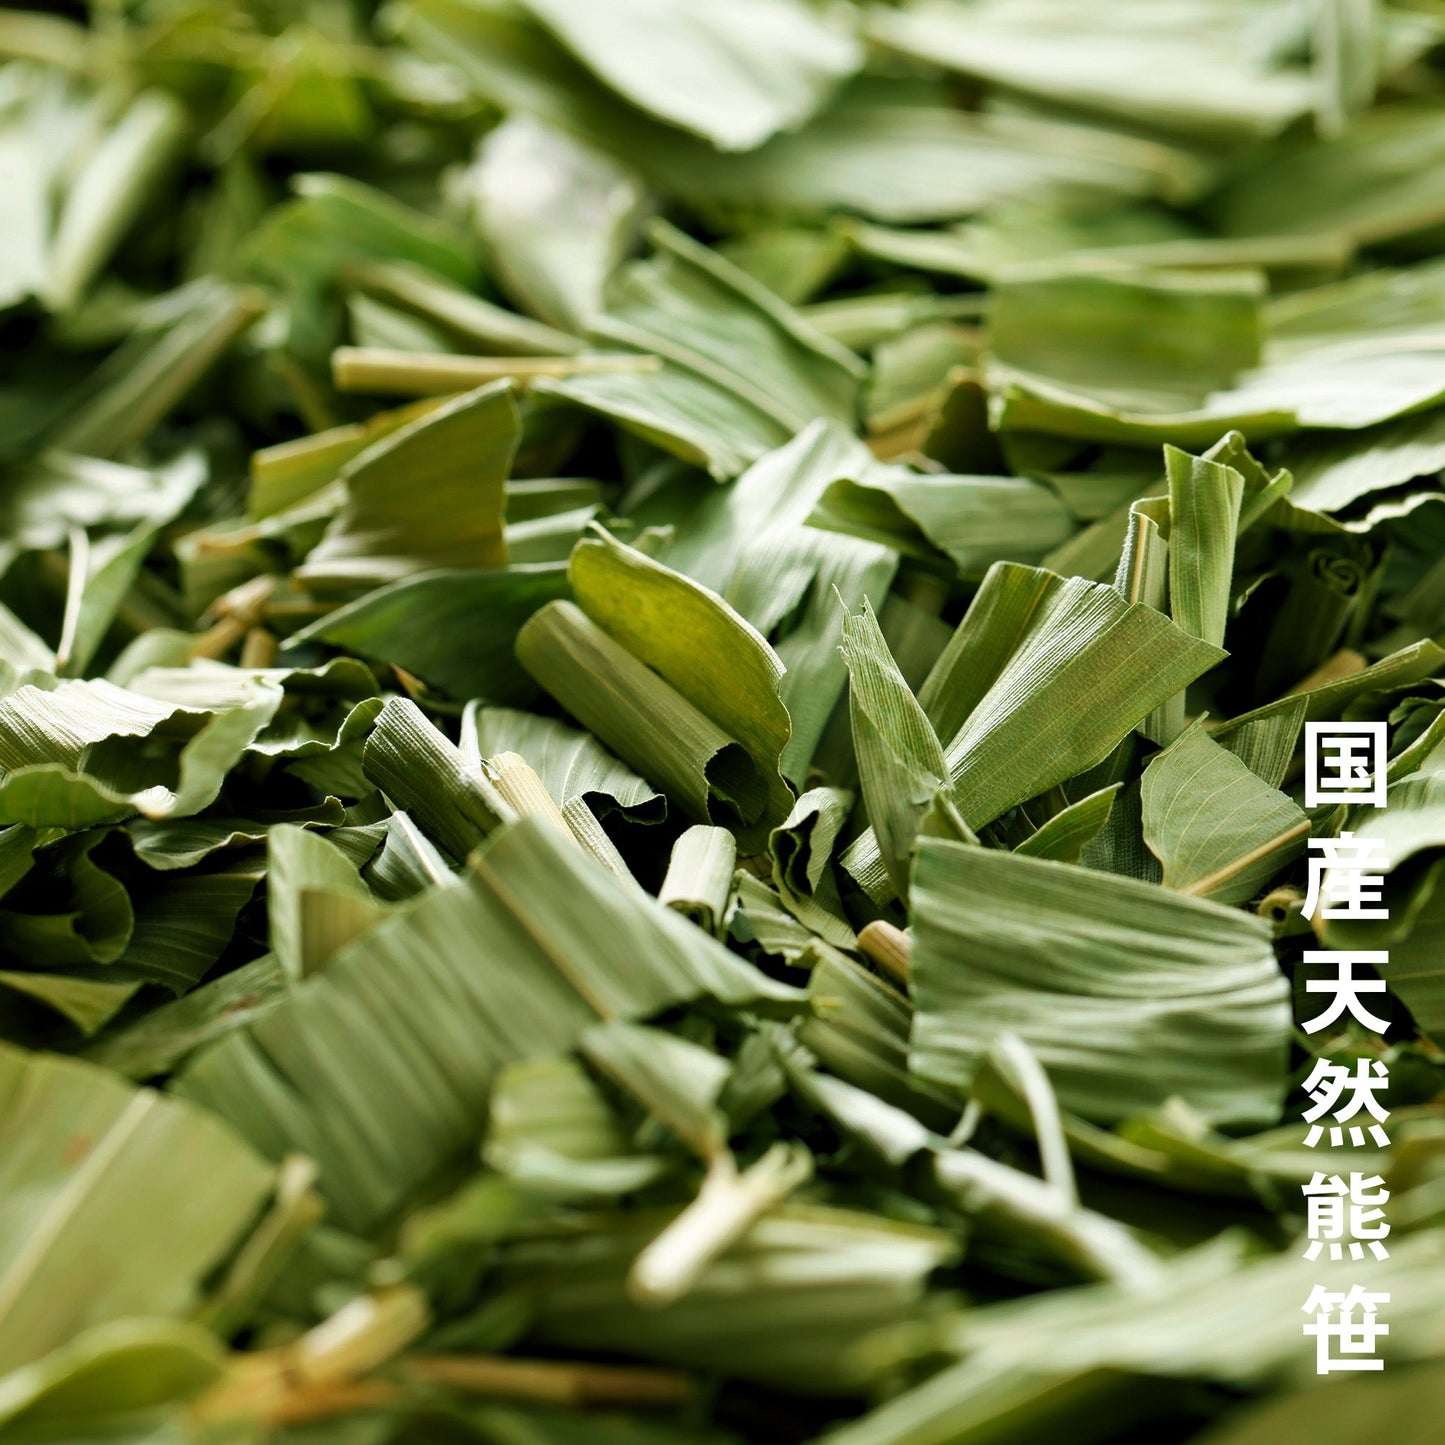 笹団子茶×1パック(2包入り)